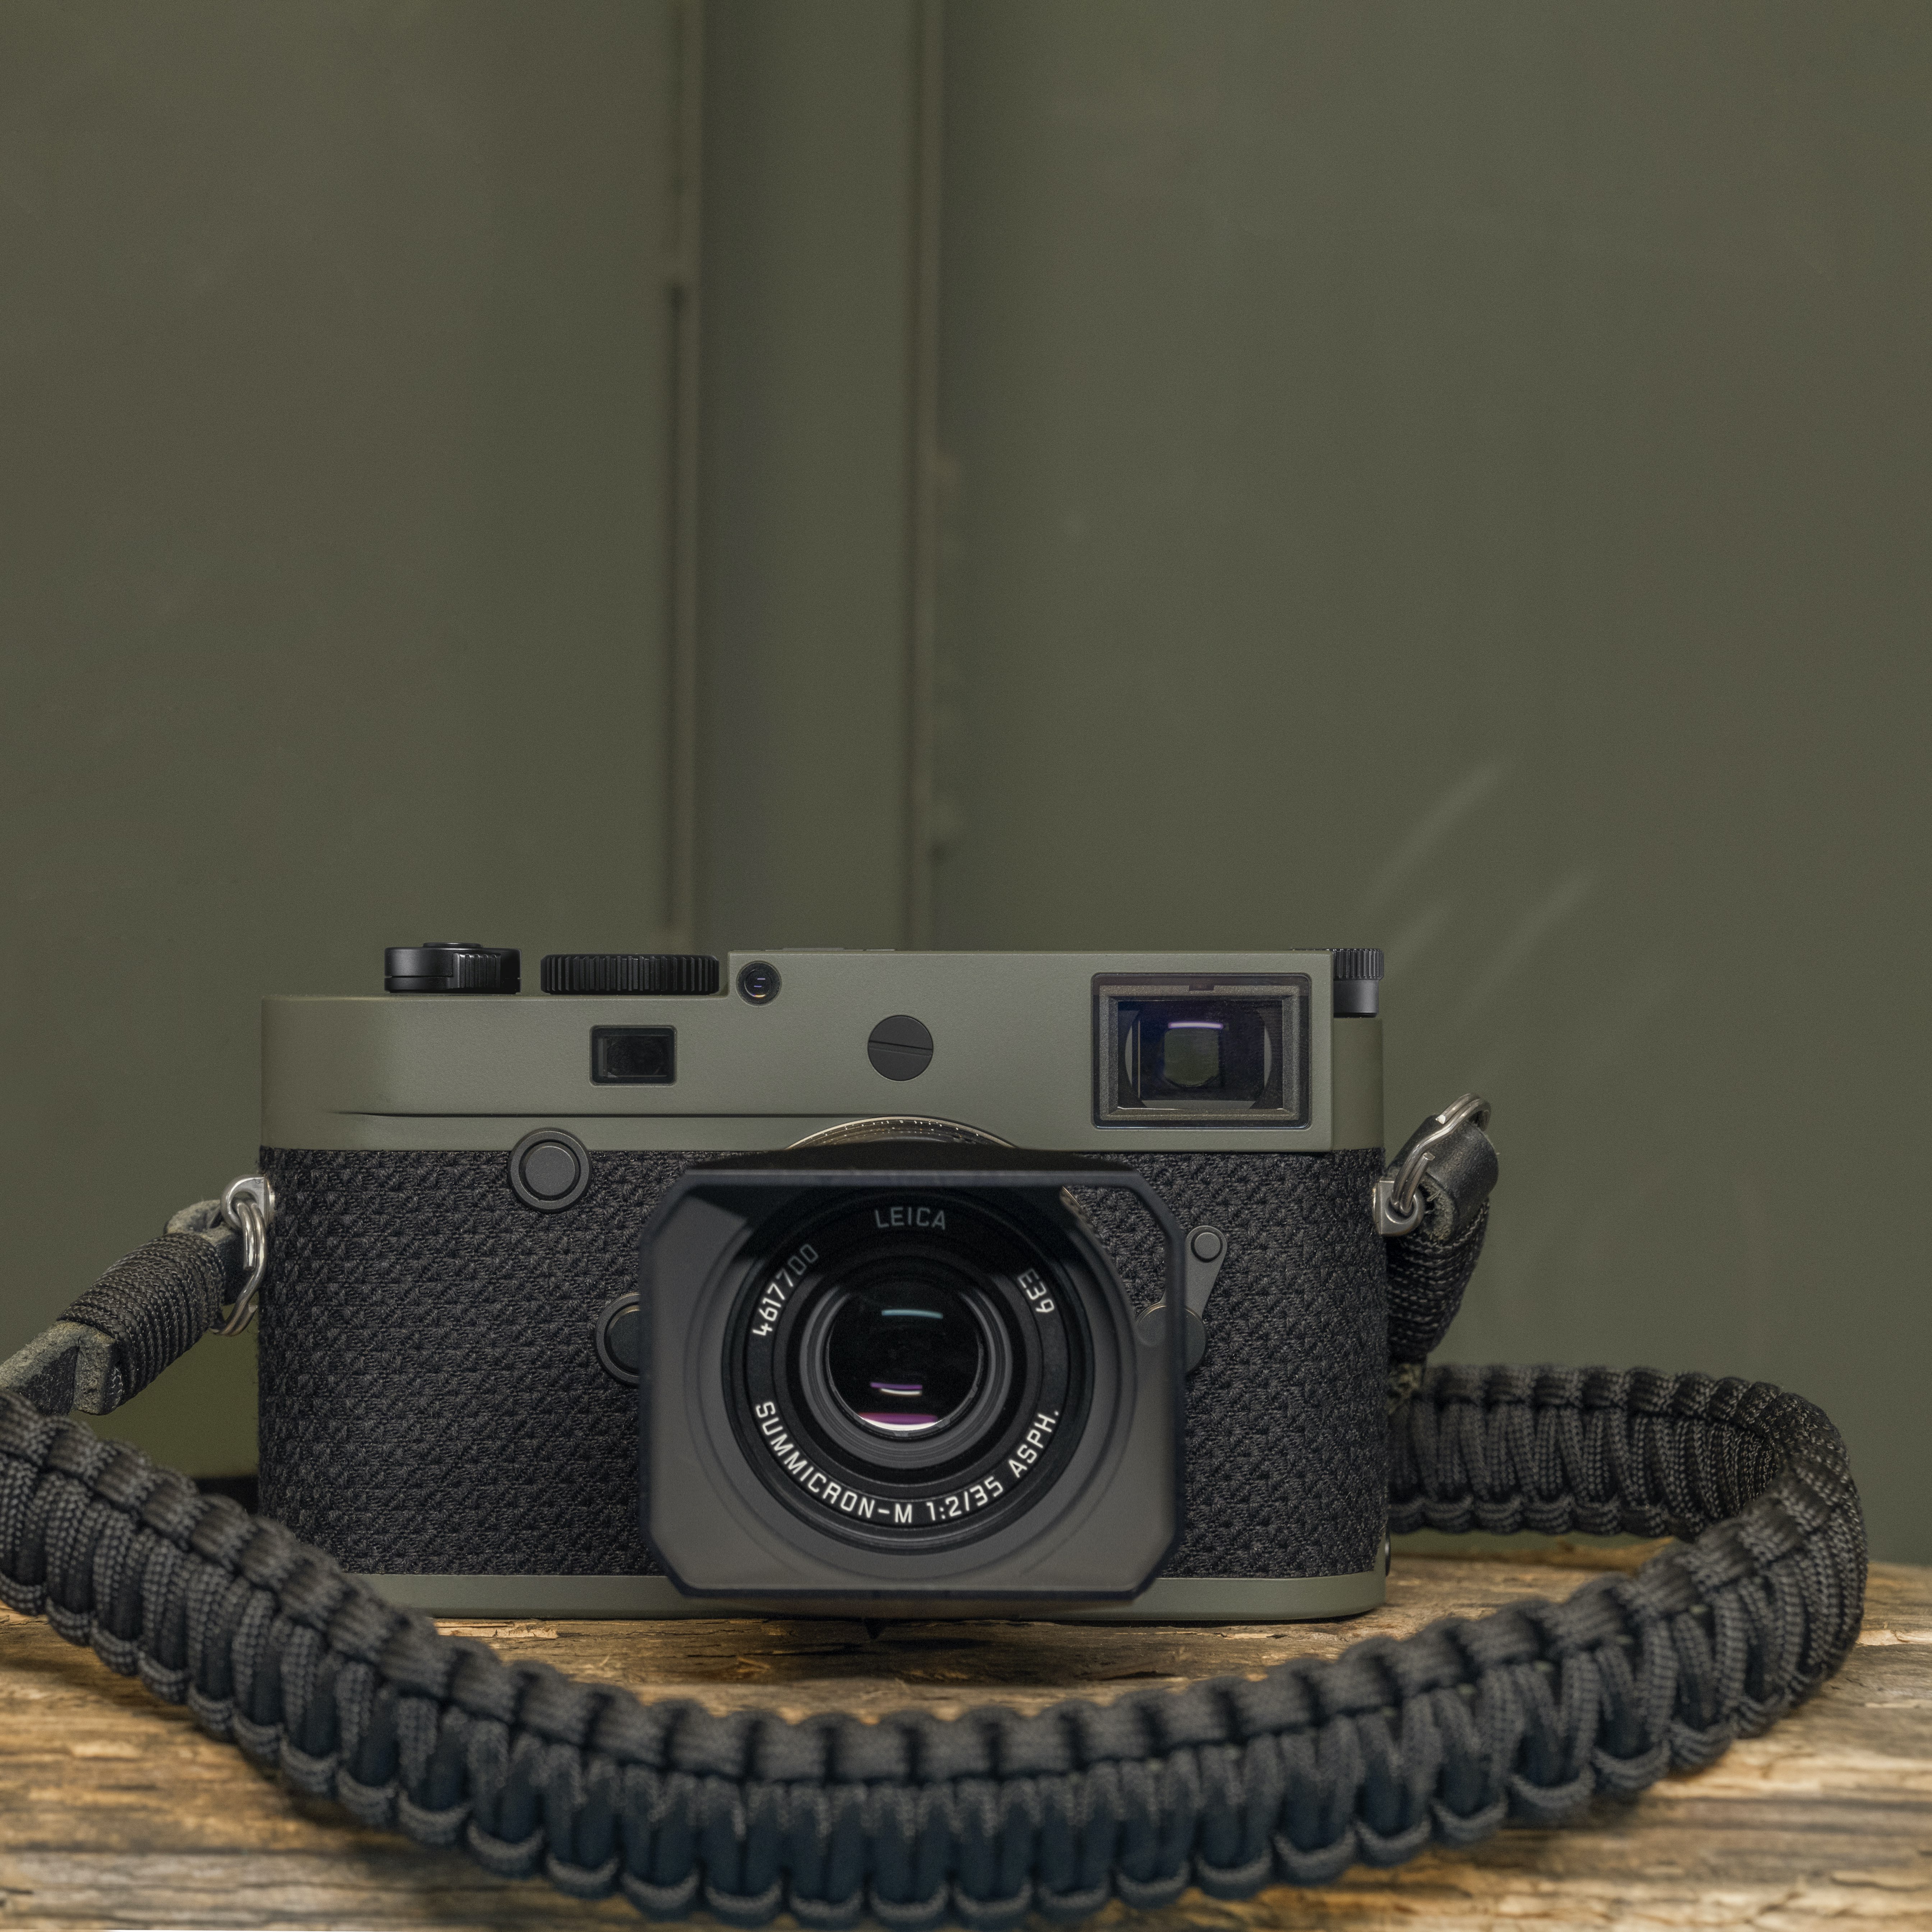 Leica COOPH Courroie en Paracorde - Noir/rouge